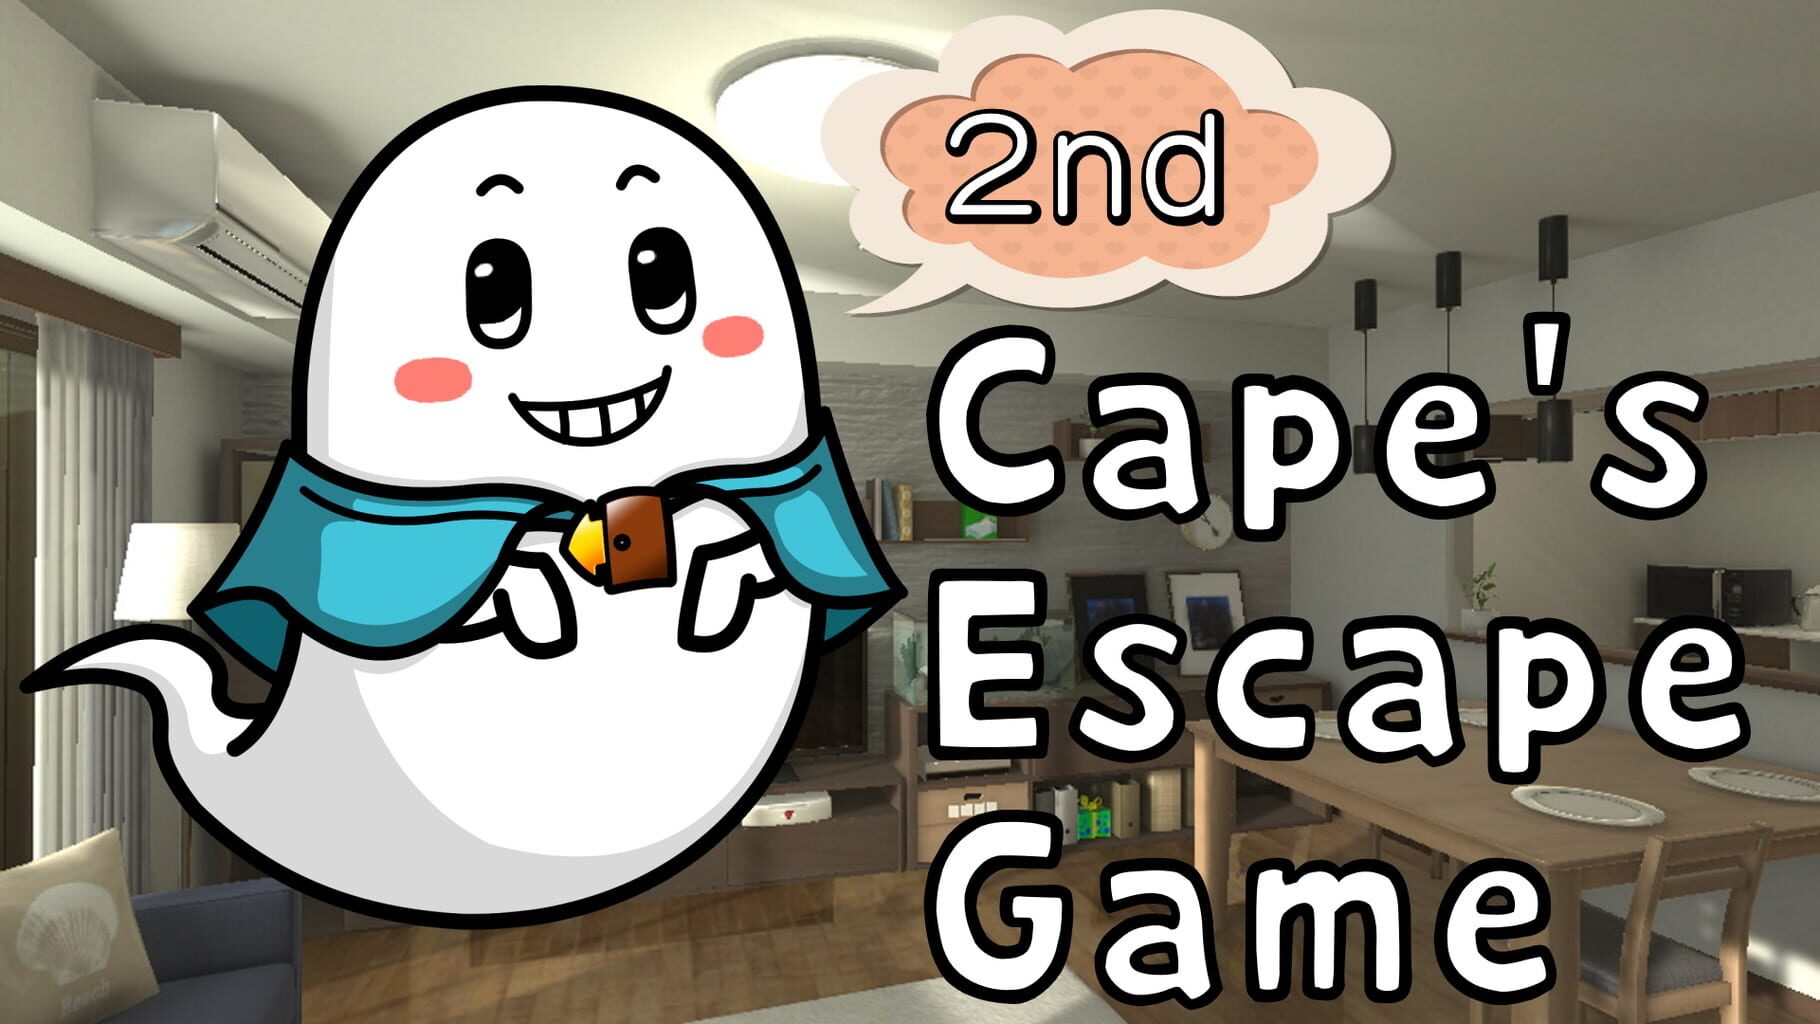 Cape's Escape Game 2nd room artwork